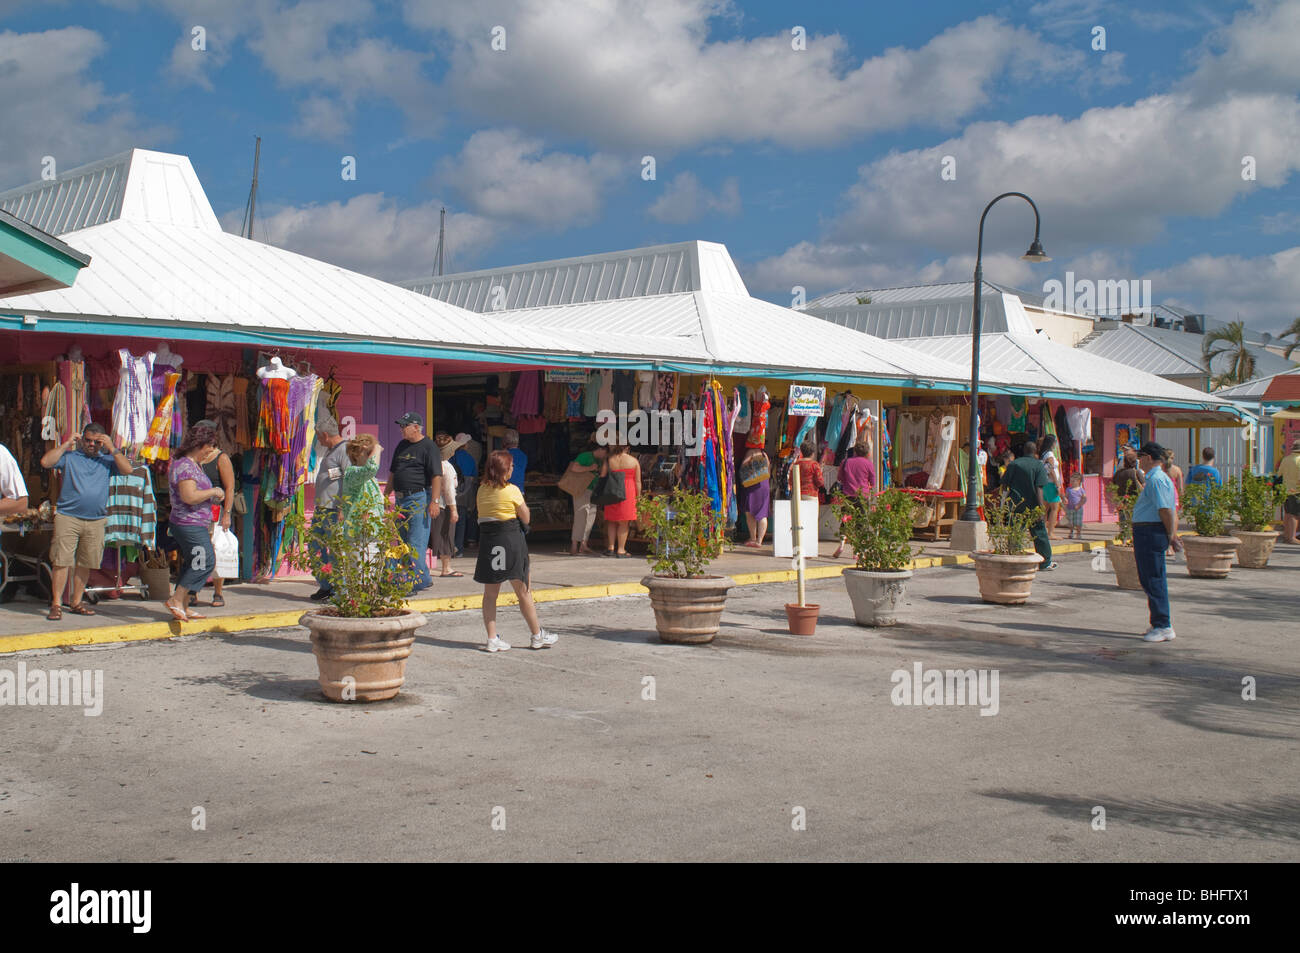 Touristen verbringen Sie einen gemütlichen Tag in Port Lucaya Bahamas einkaufen. Stockfoto